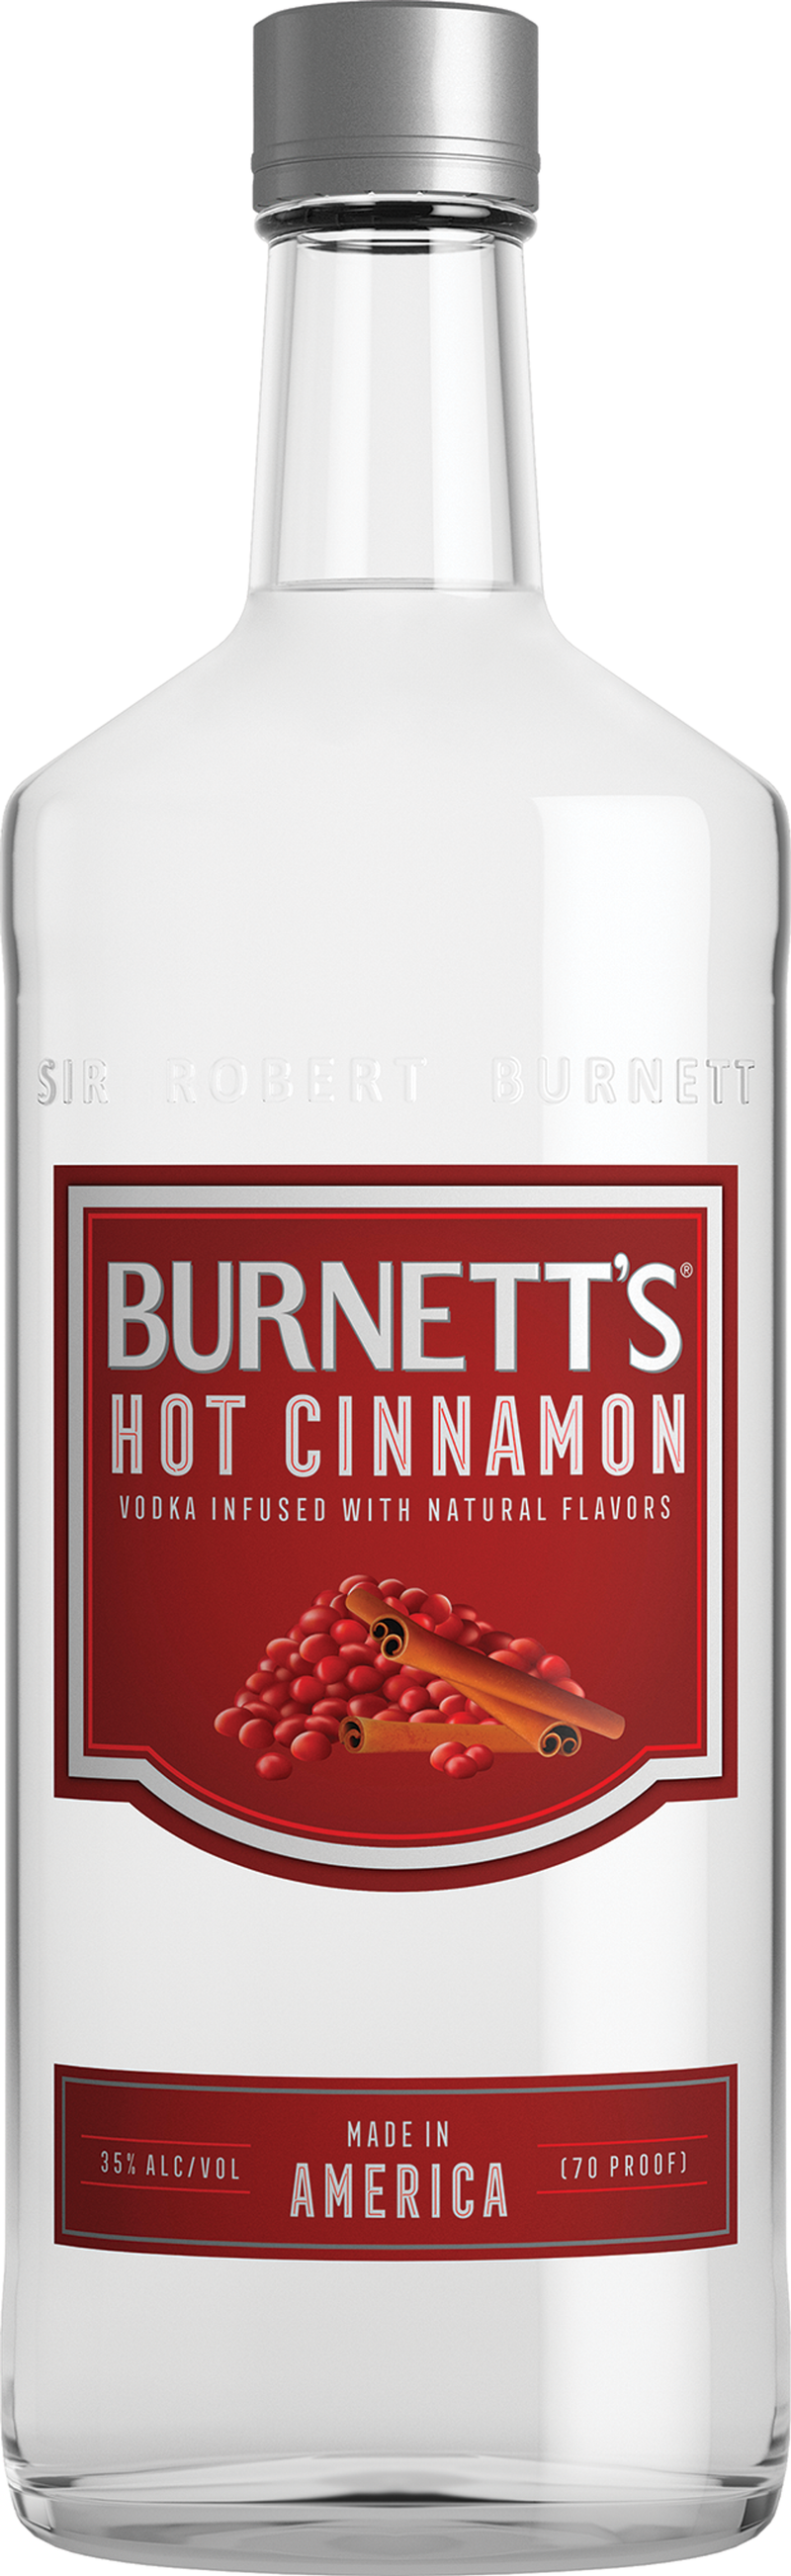 BURNETT'S HOT CINNAMON